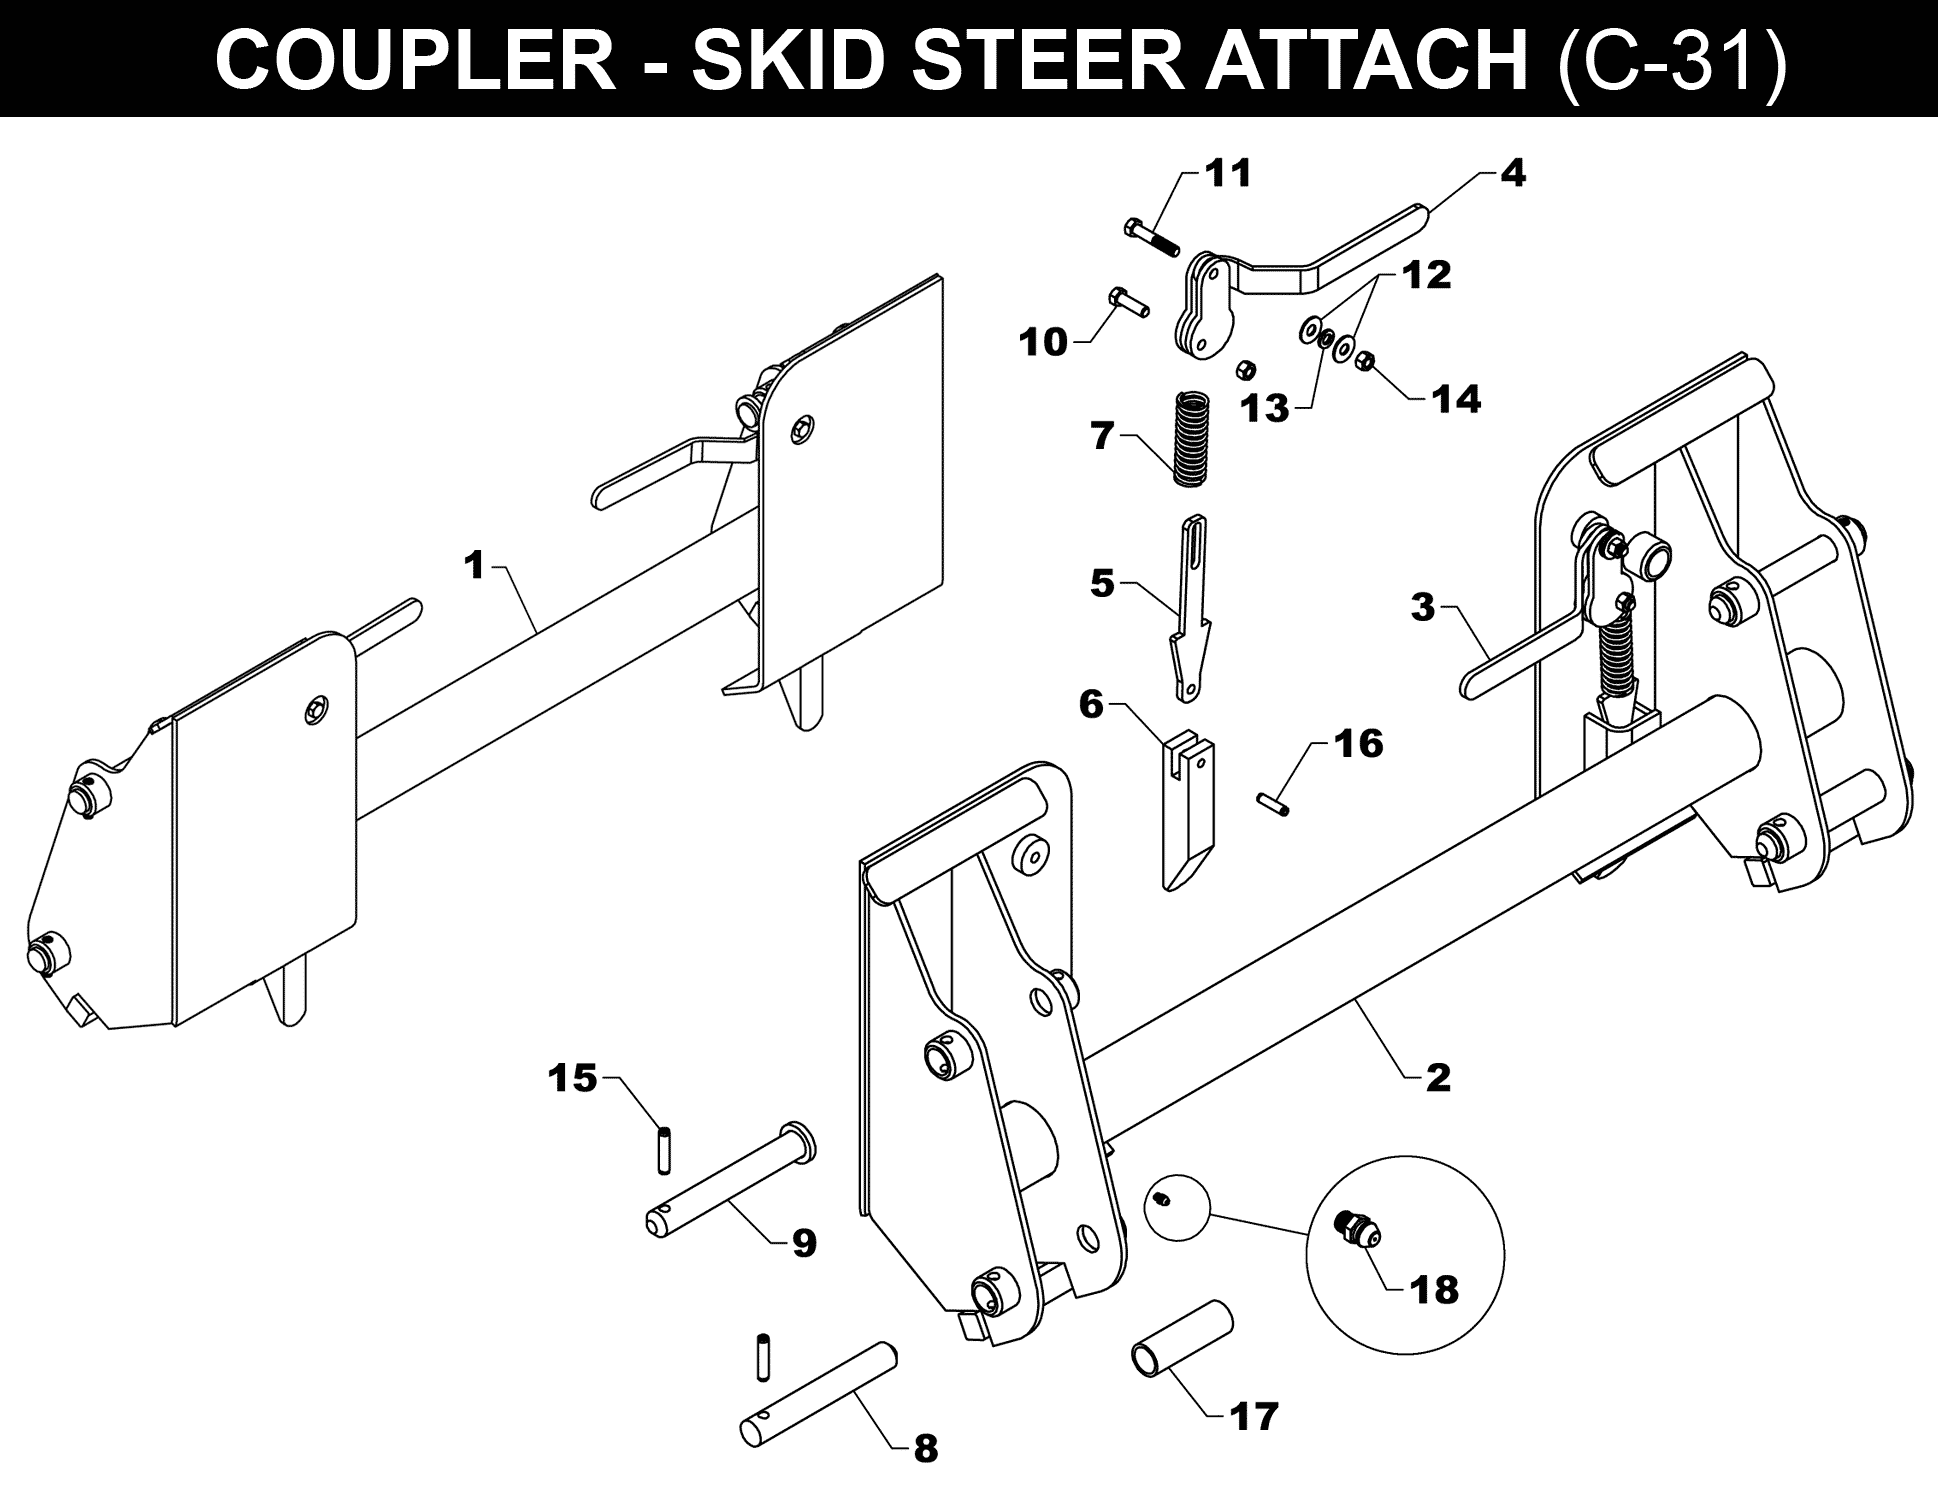 OPTIONAL SKID-STEER COUPLER - C-31